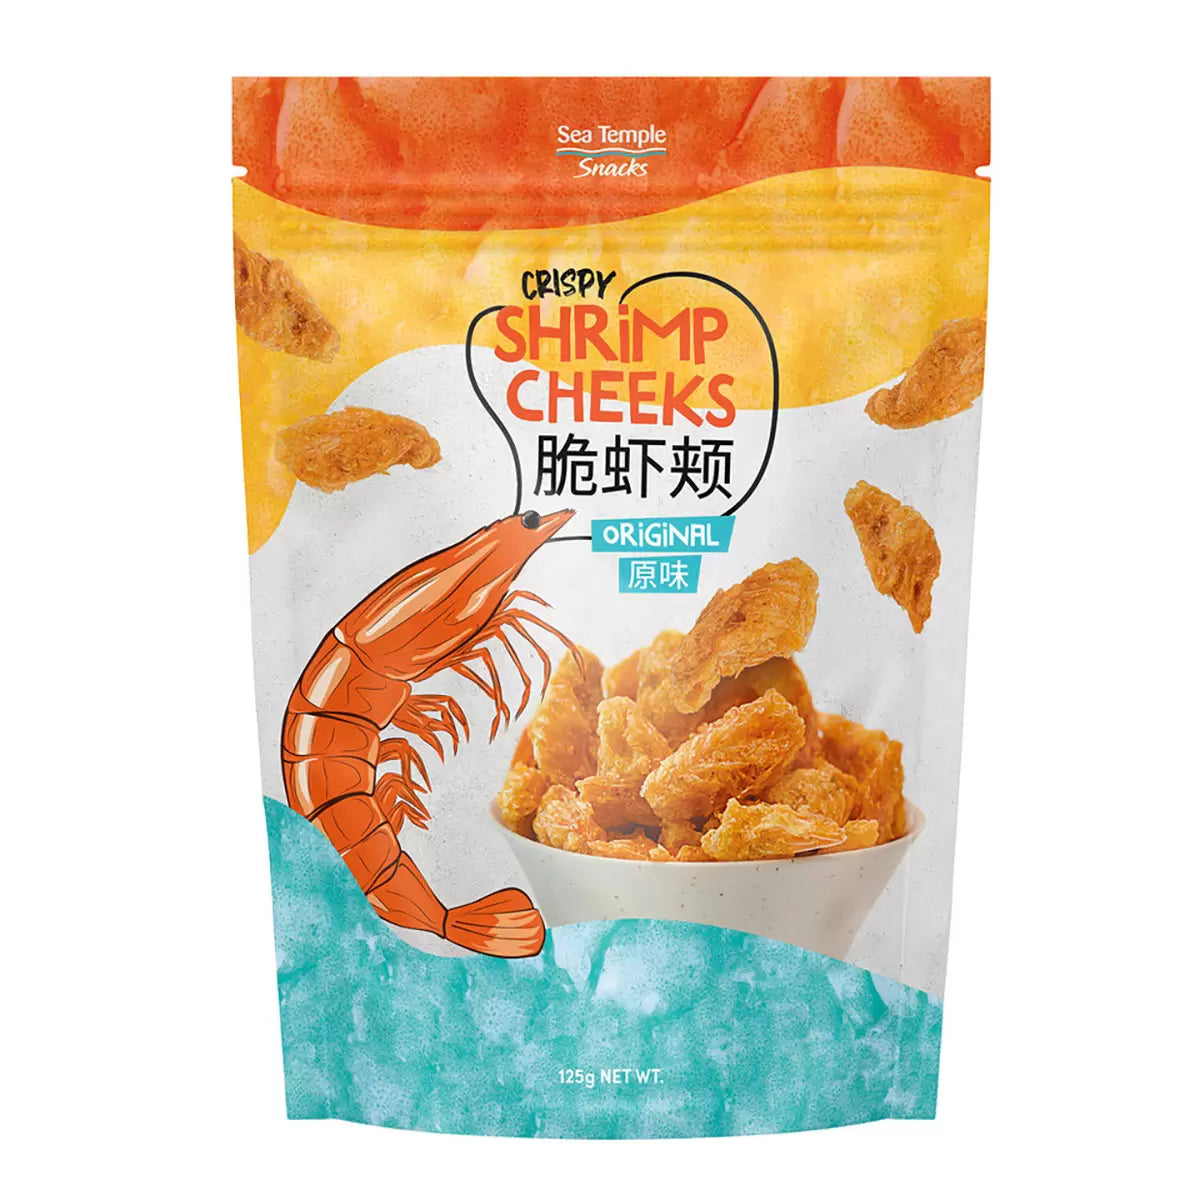 Sea Temple Crispy Shrimp Cheeks - 125g